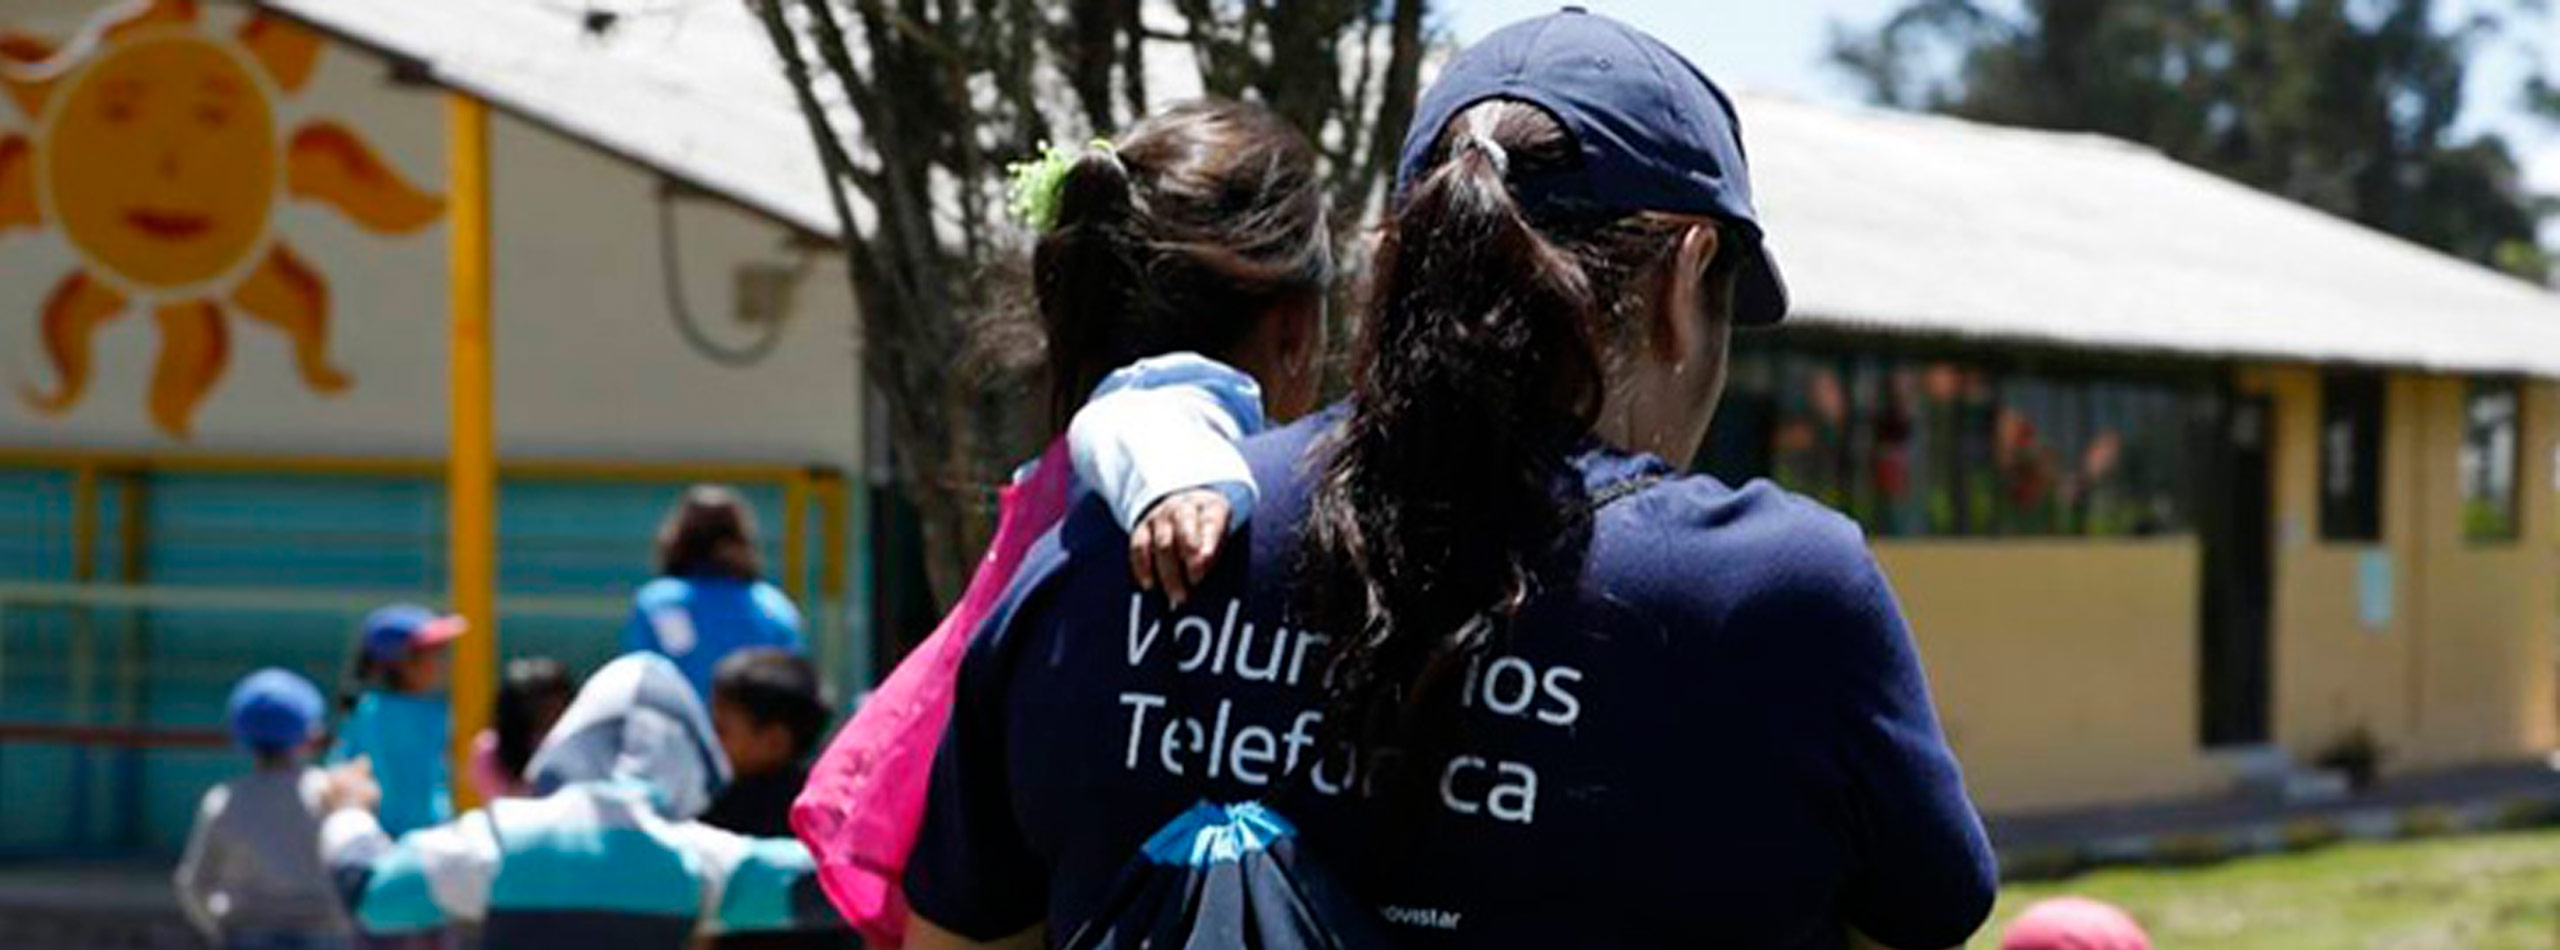 Mujeres que hacen del mundo un lugar mejor: Voluntarias Telefónica